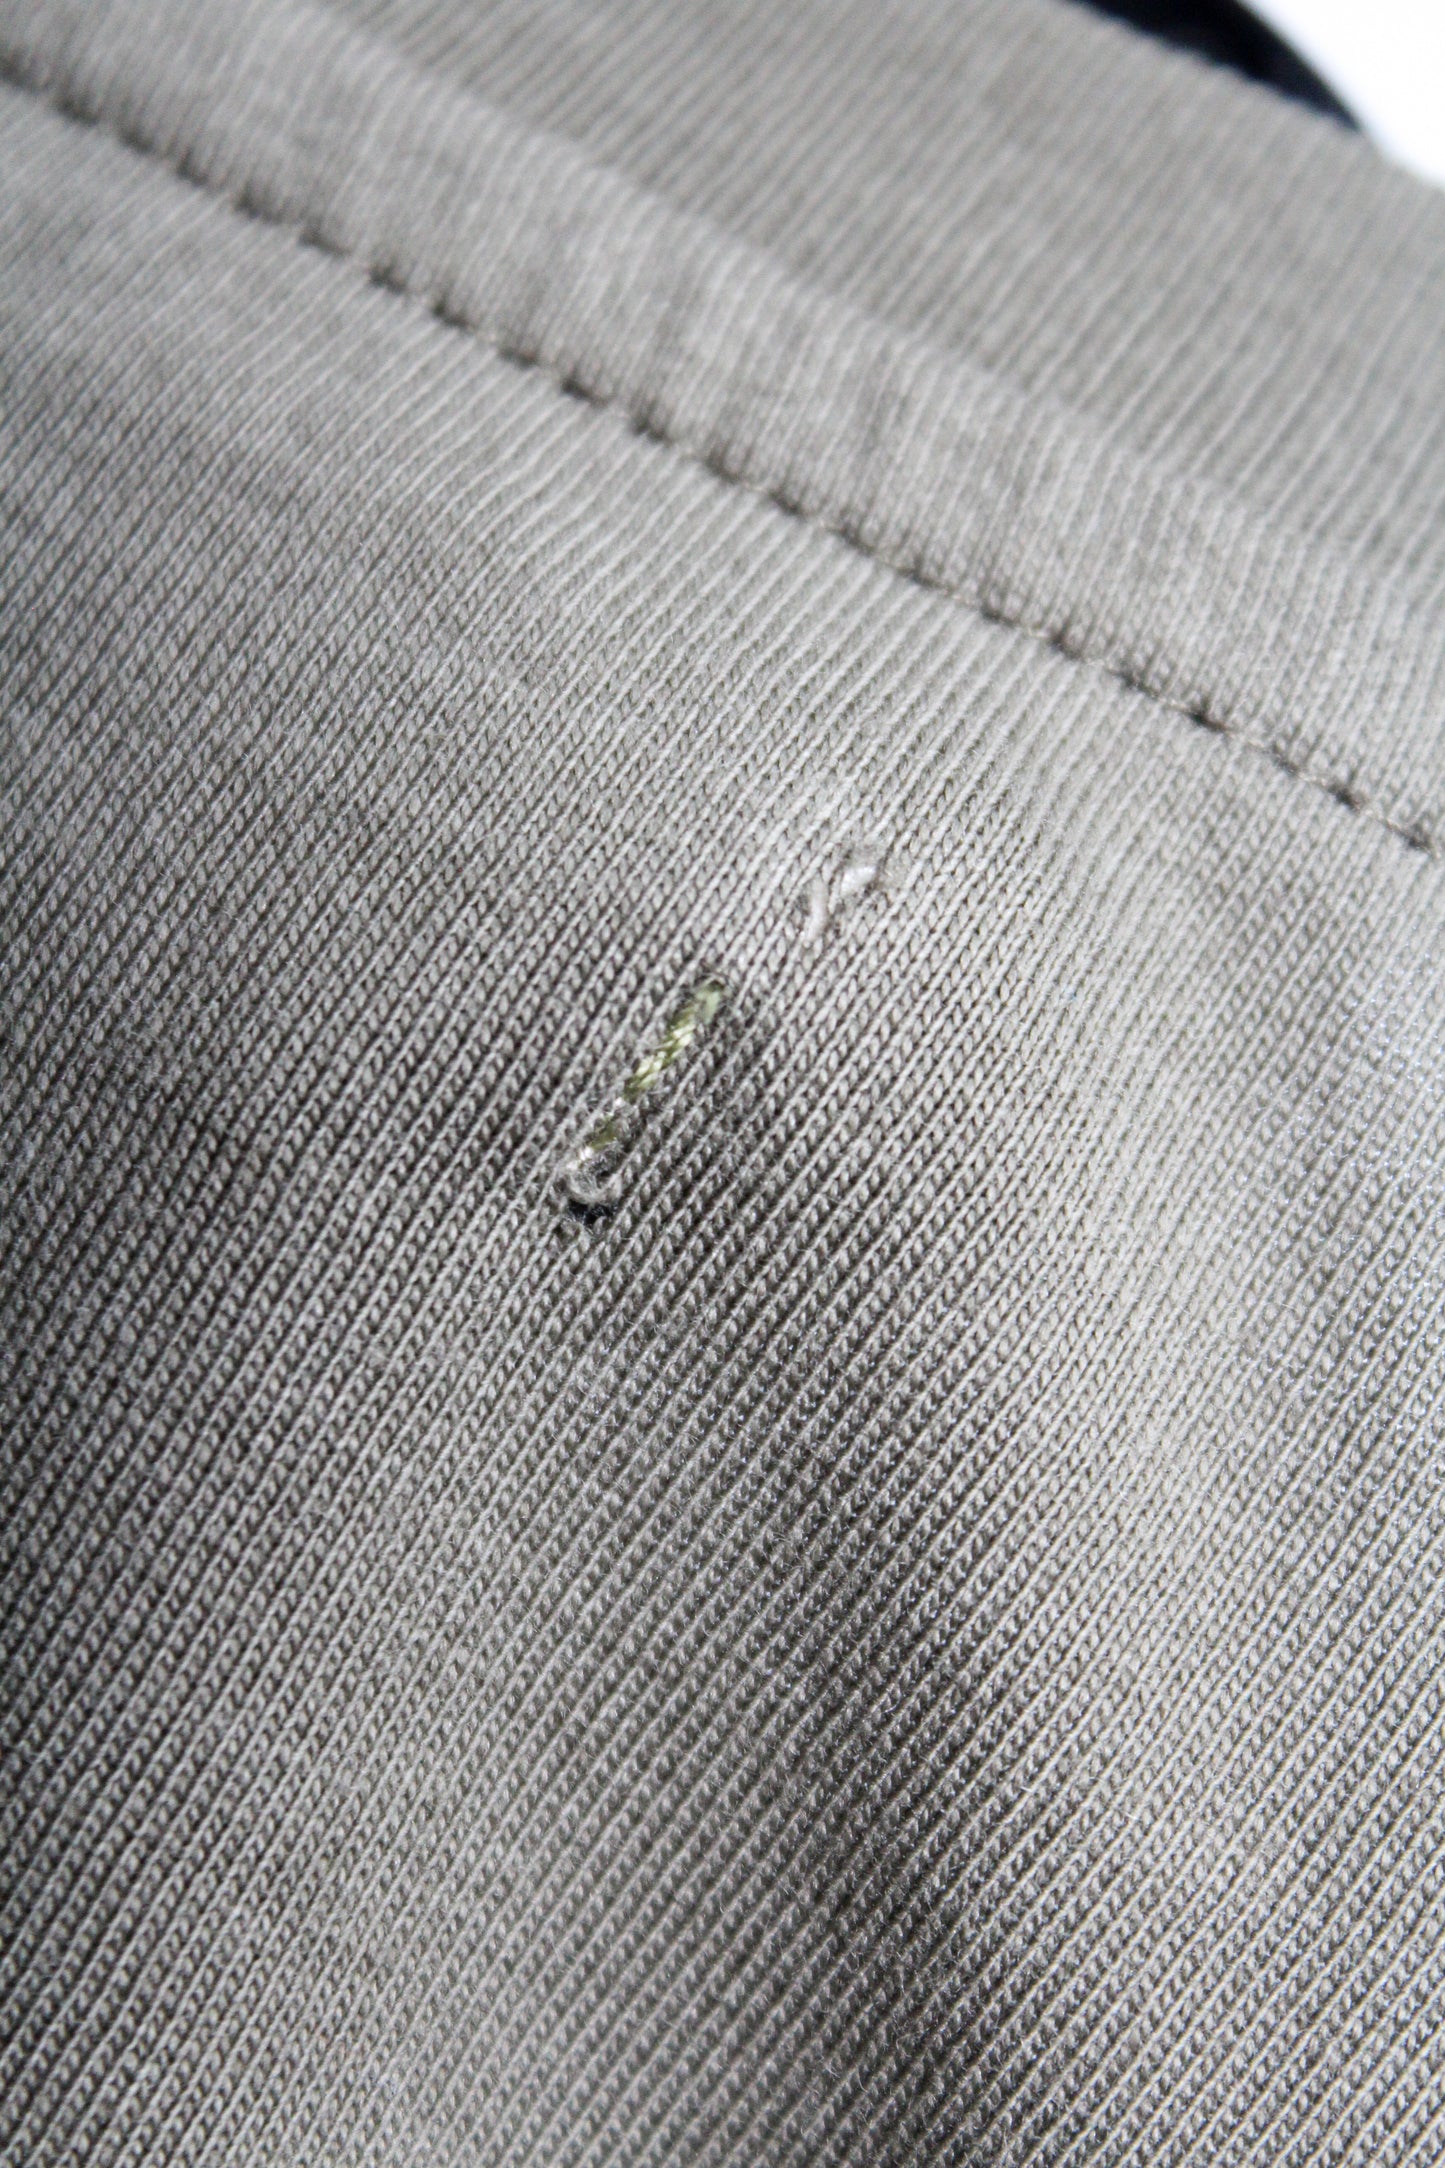 Imparfait : T-shirt unisex coton bio logo Waïloa doré brodé